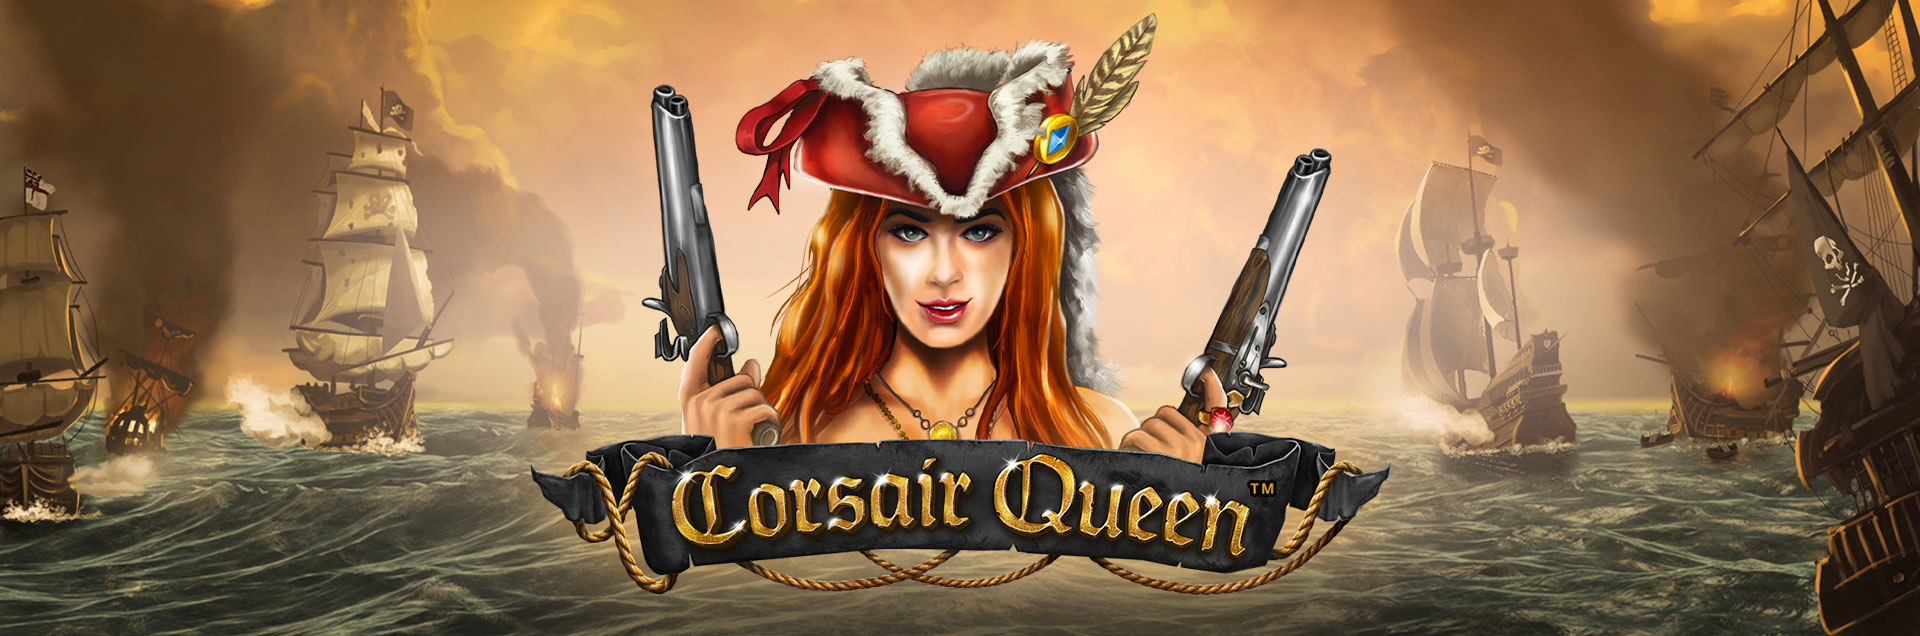 Corsair Queen header games logotype